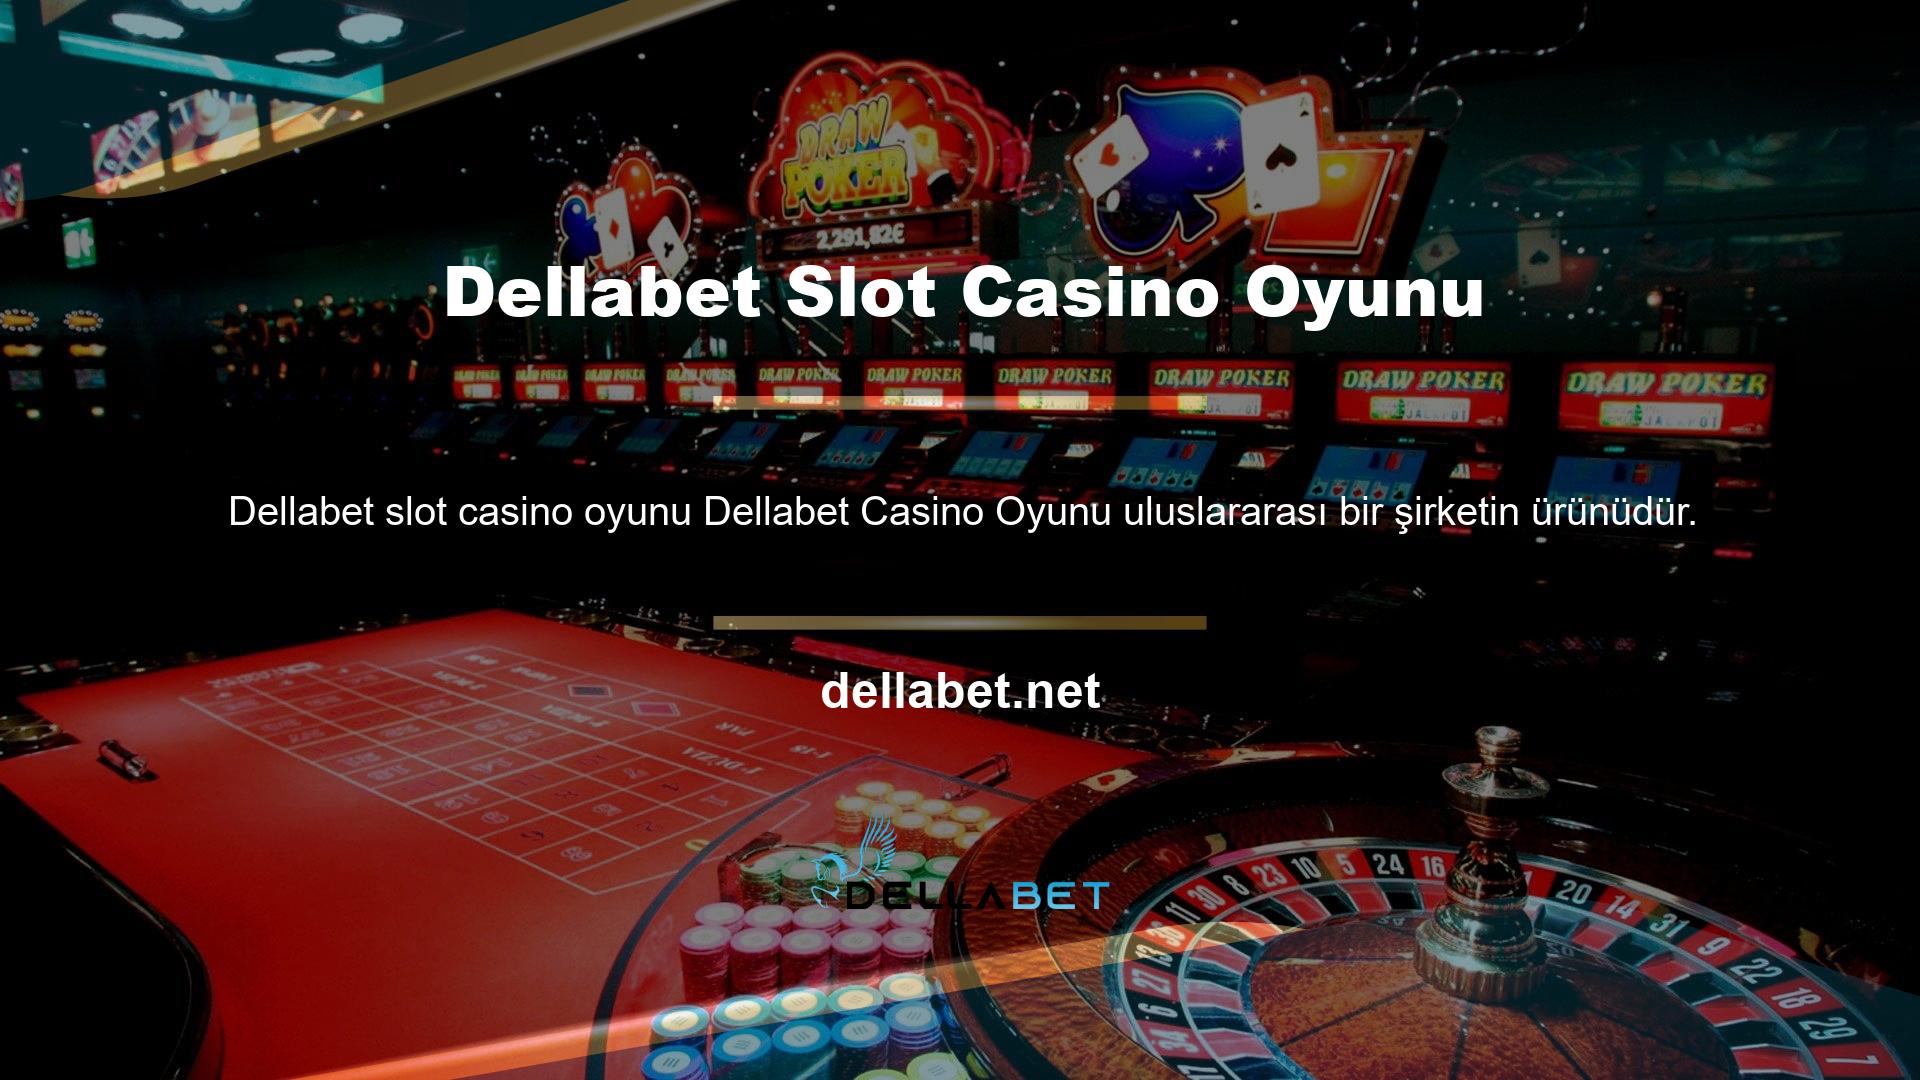 Dellabet, geniş oyun yelpazesi ve premium içerikle kullanıcılara benzersiz bir casino deneyimi sunarak küresel oyun sektörüne yeni bir ivme kazandırıyor